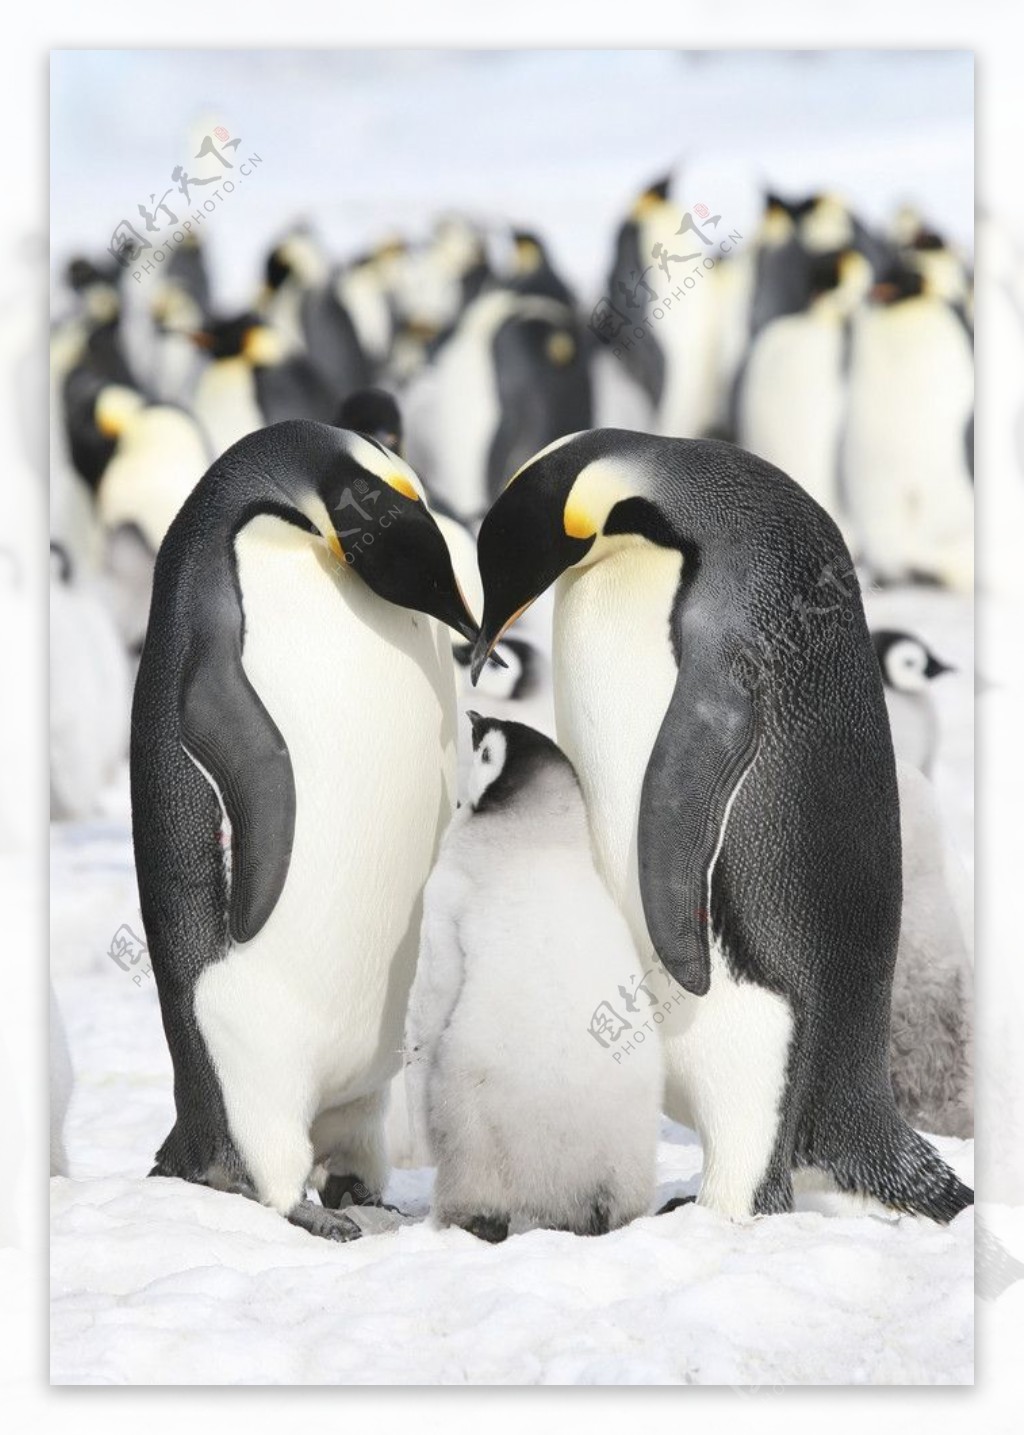 企鹅南极企鹅图片